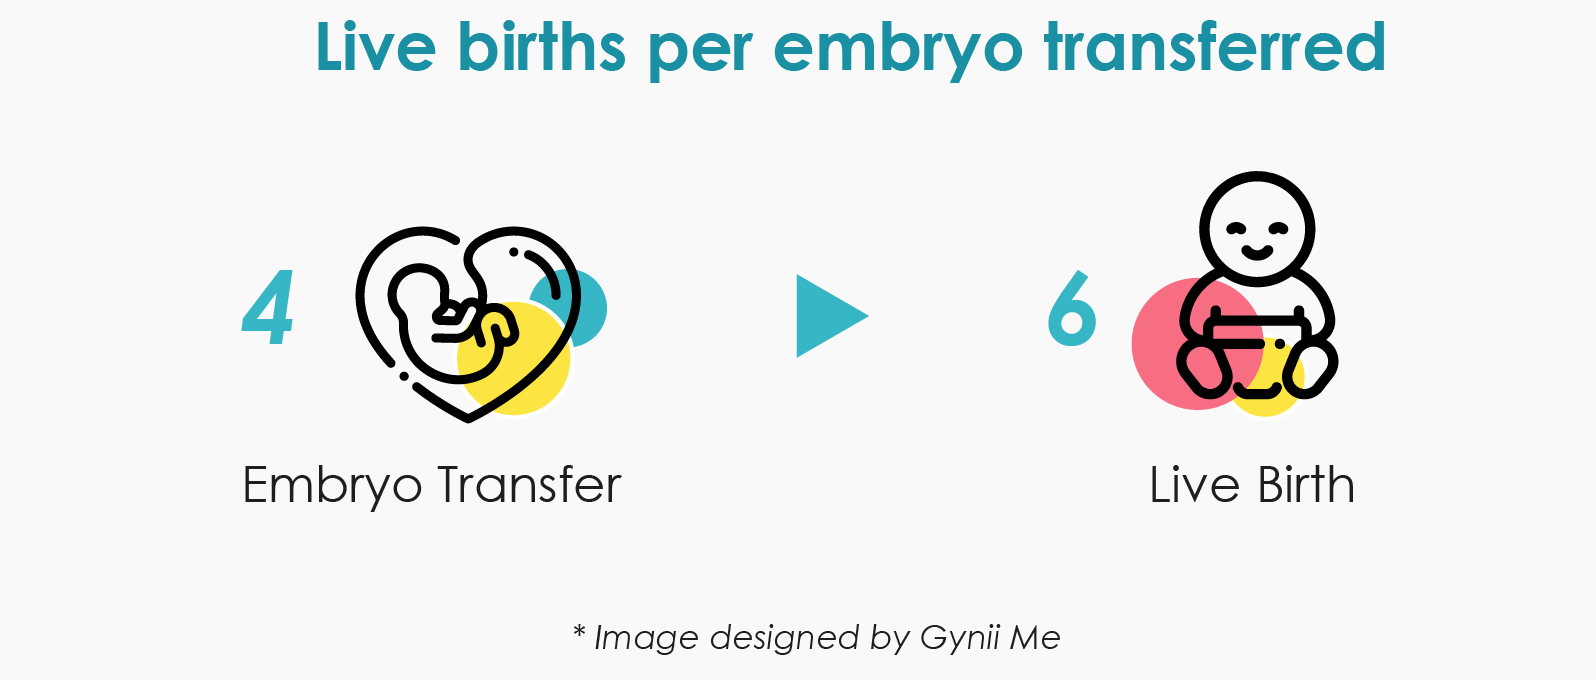 Live birth per embryo transferred